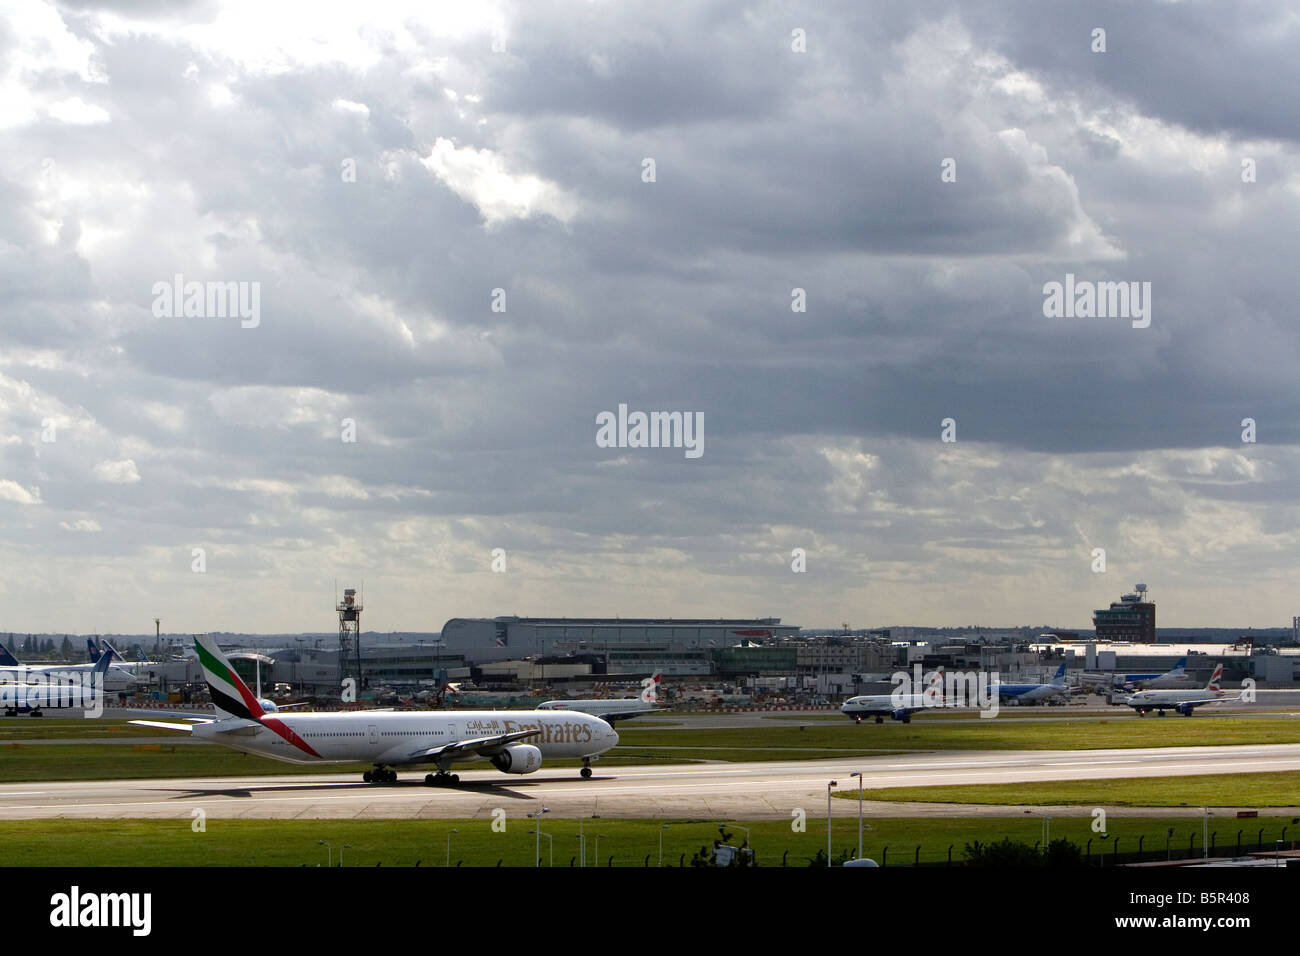 Emirates Boeing 777 Flugzeug auf der Landebahn am London Heathrow Airport England Großbritannien an einem bewölkten Tag Stockfoto